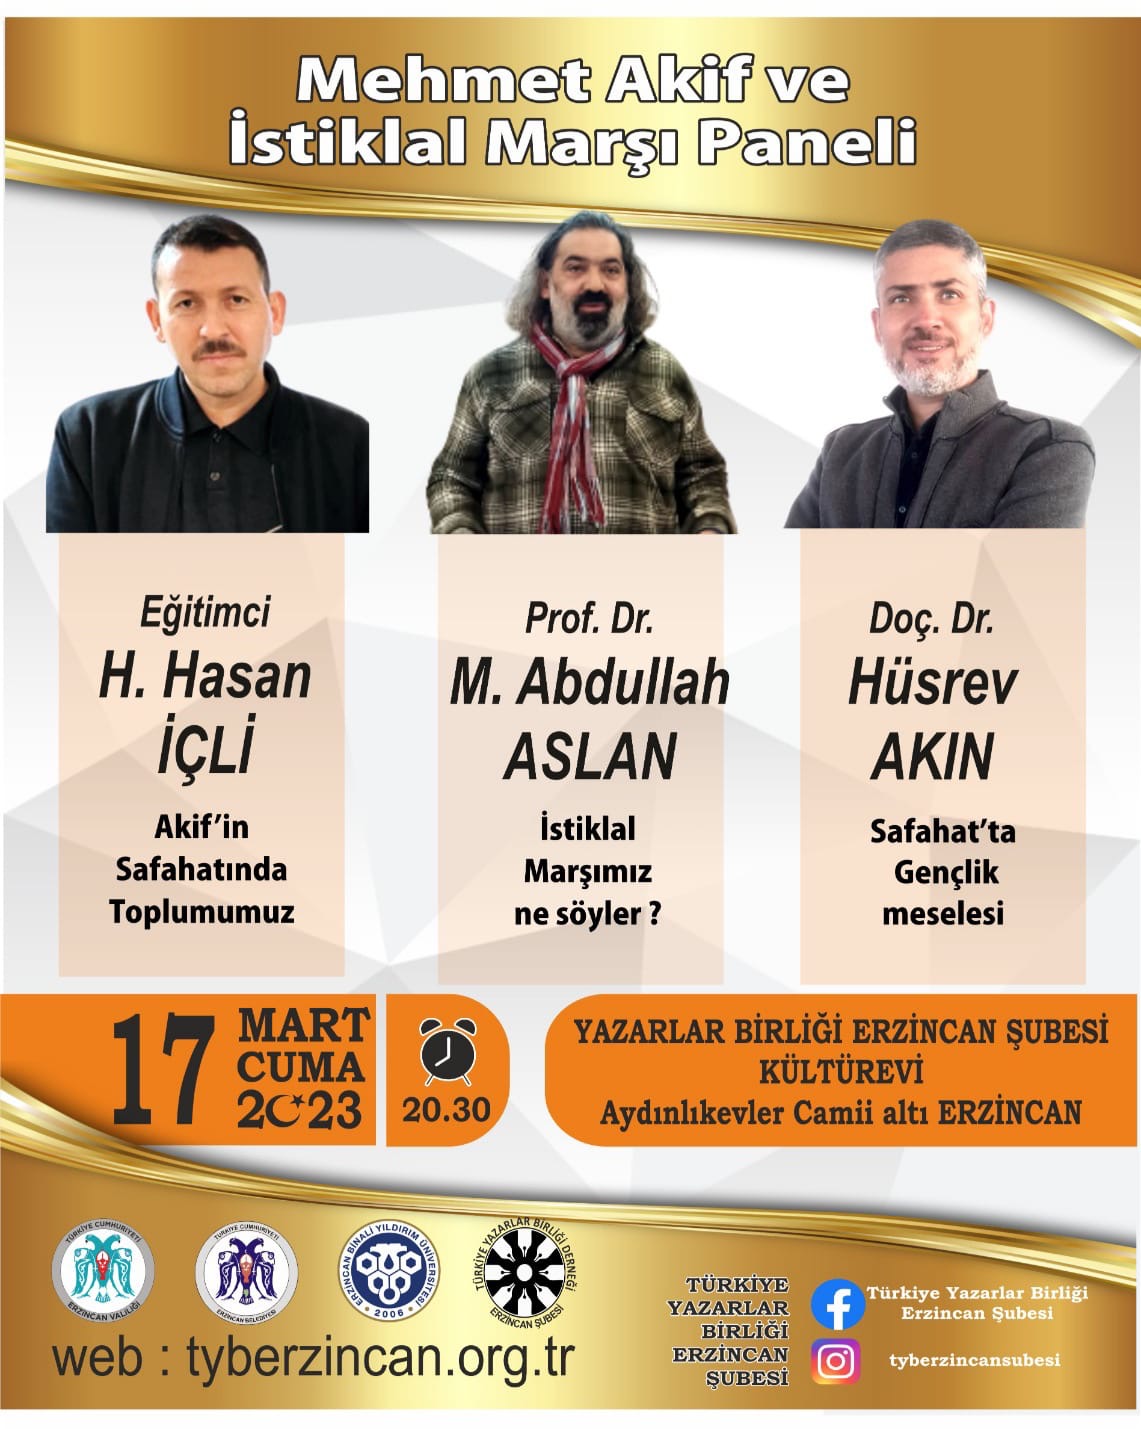 Erzincan’da Mehmet Âkif ve İstiklal Marşı paneli düzenlenecek